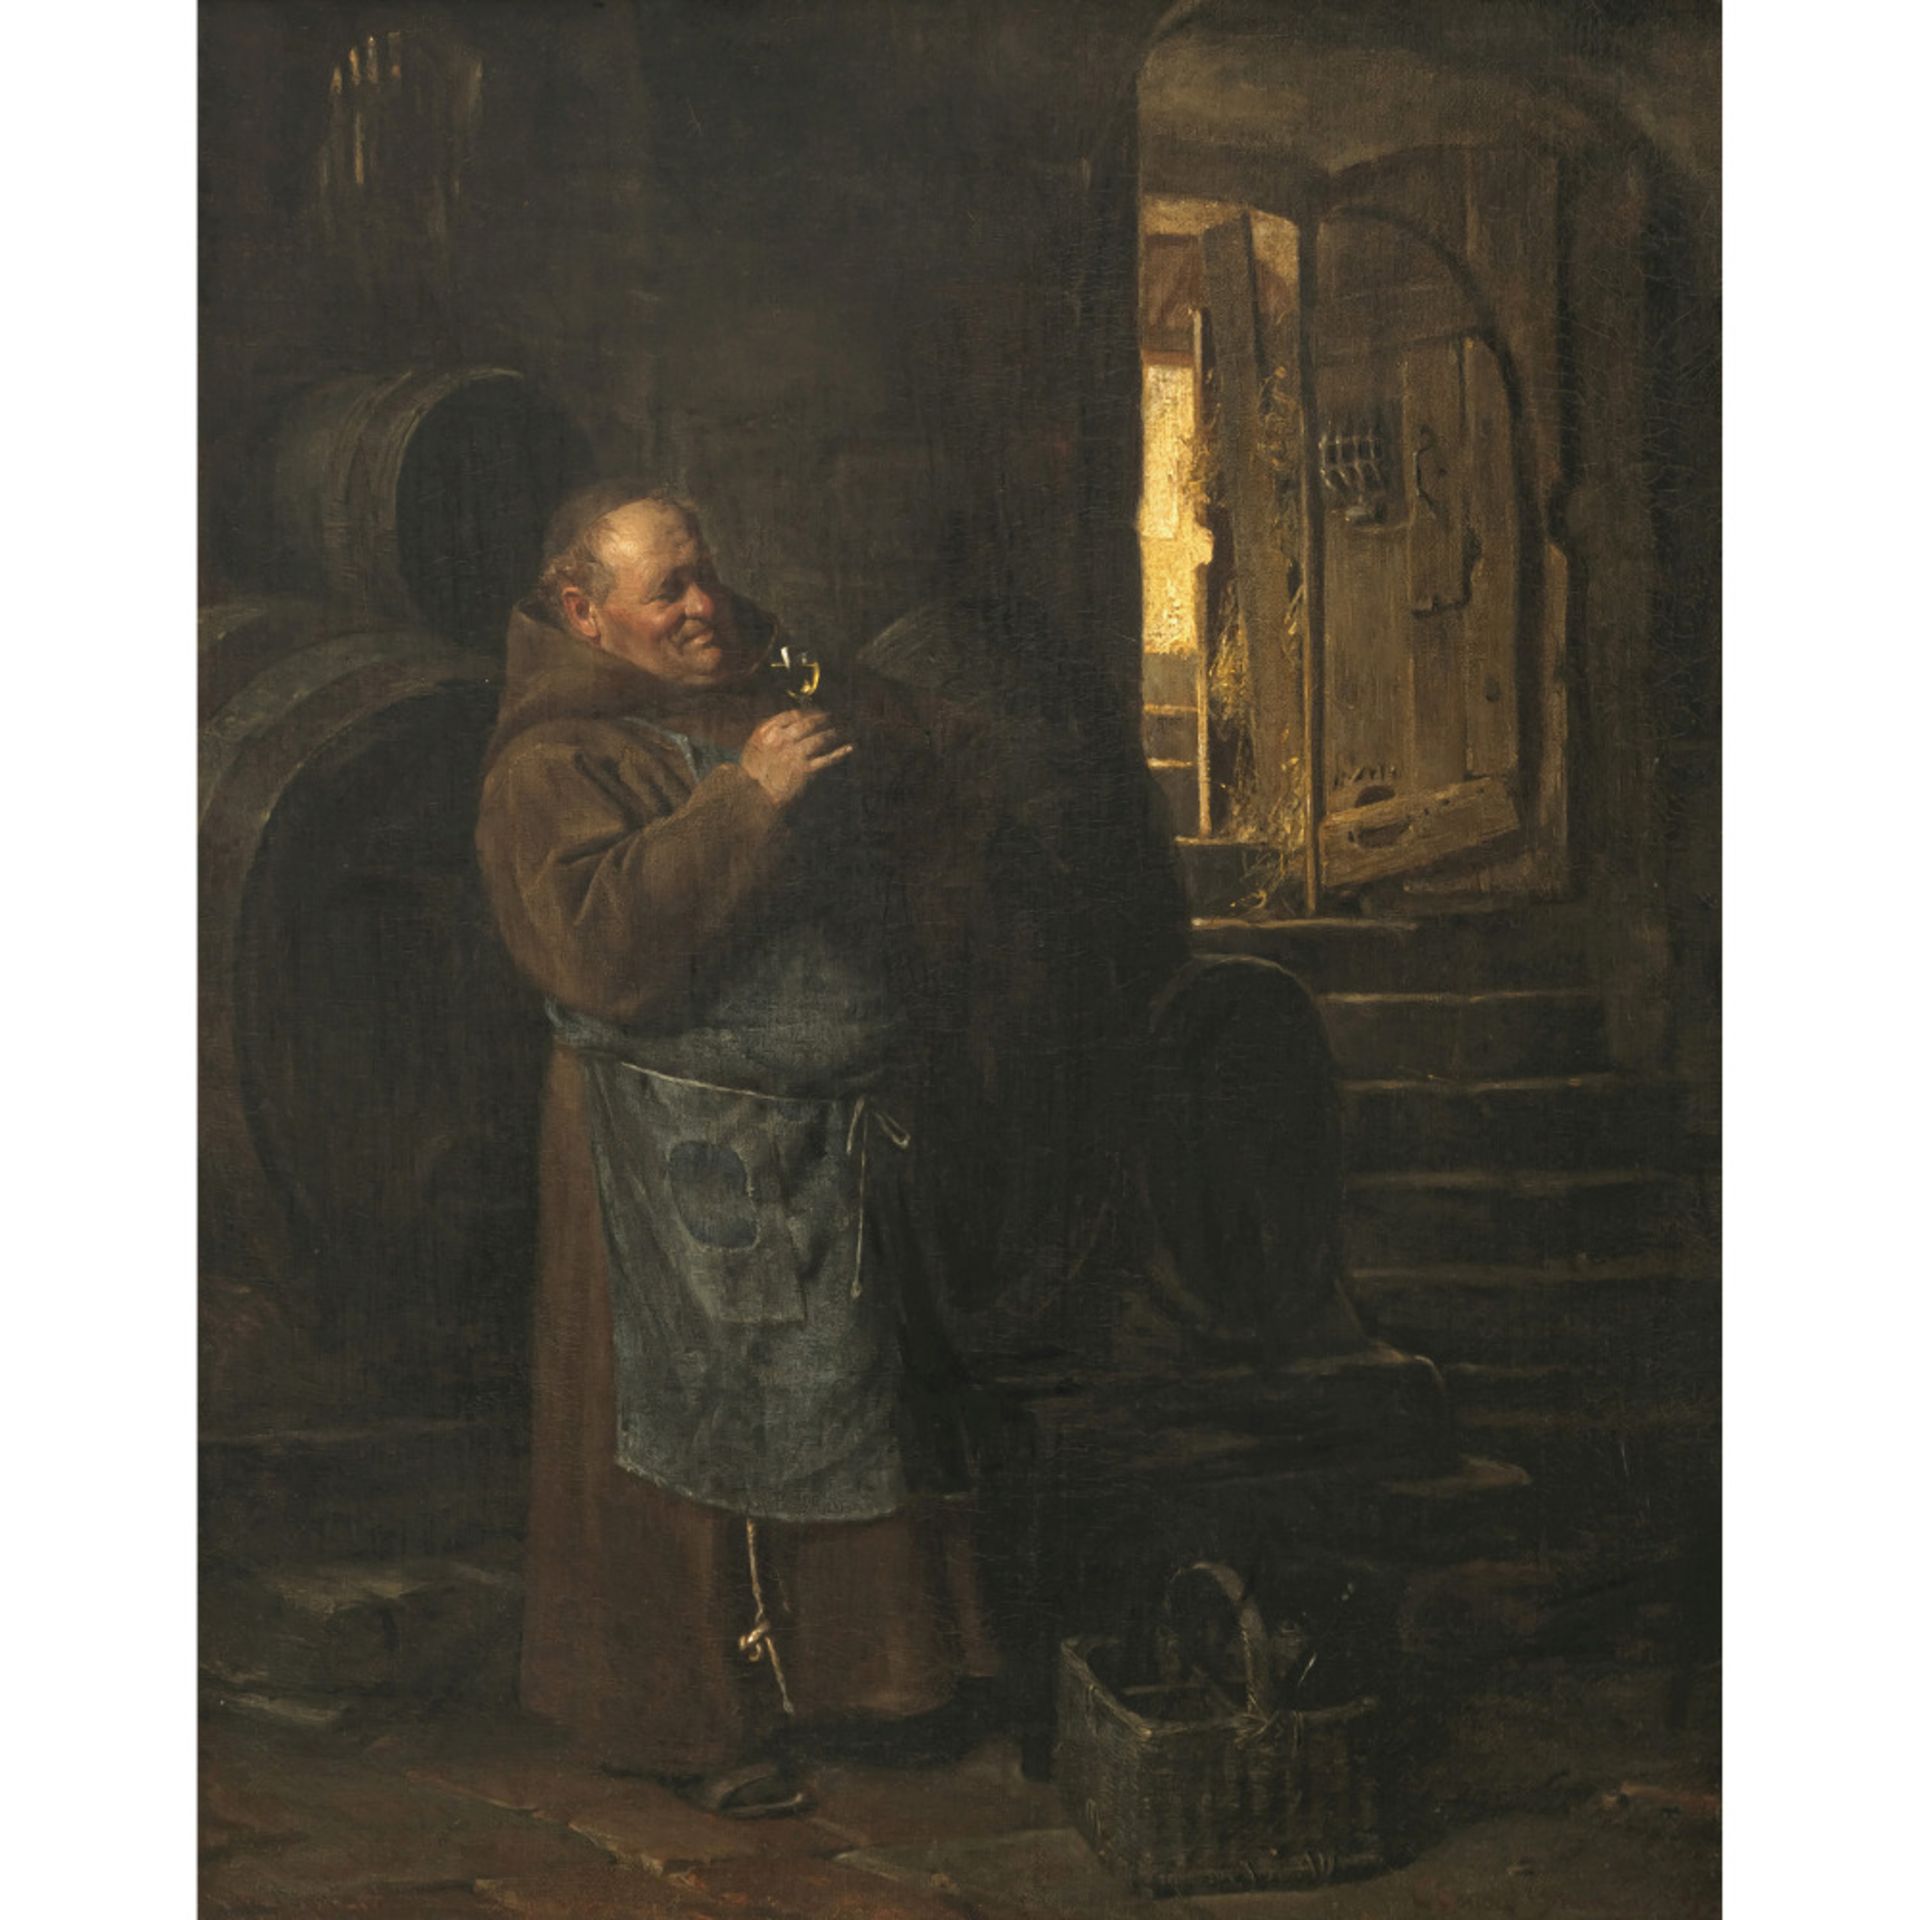 Eduard von Grützner - Cellarman in the wine cellar